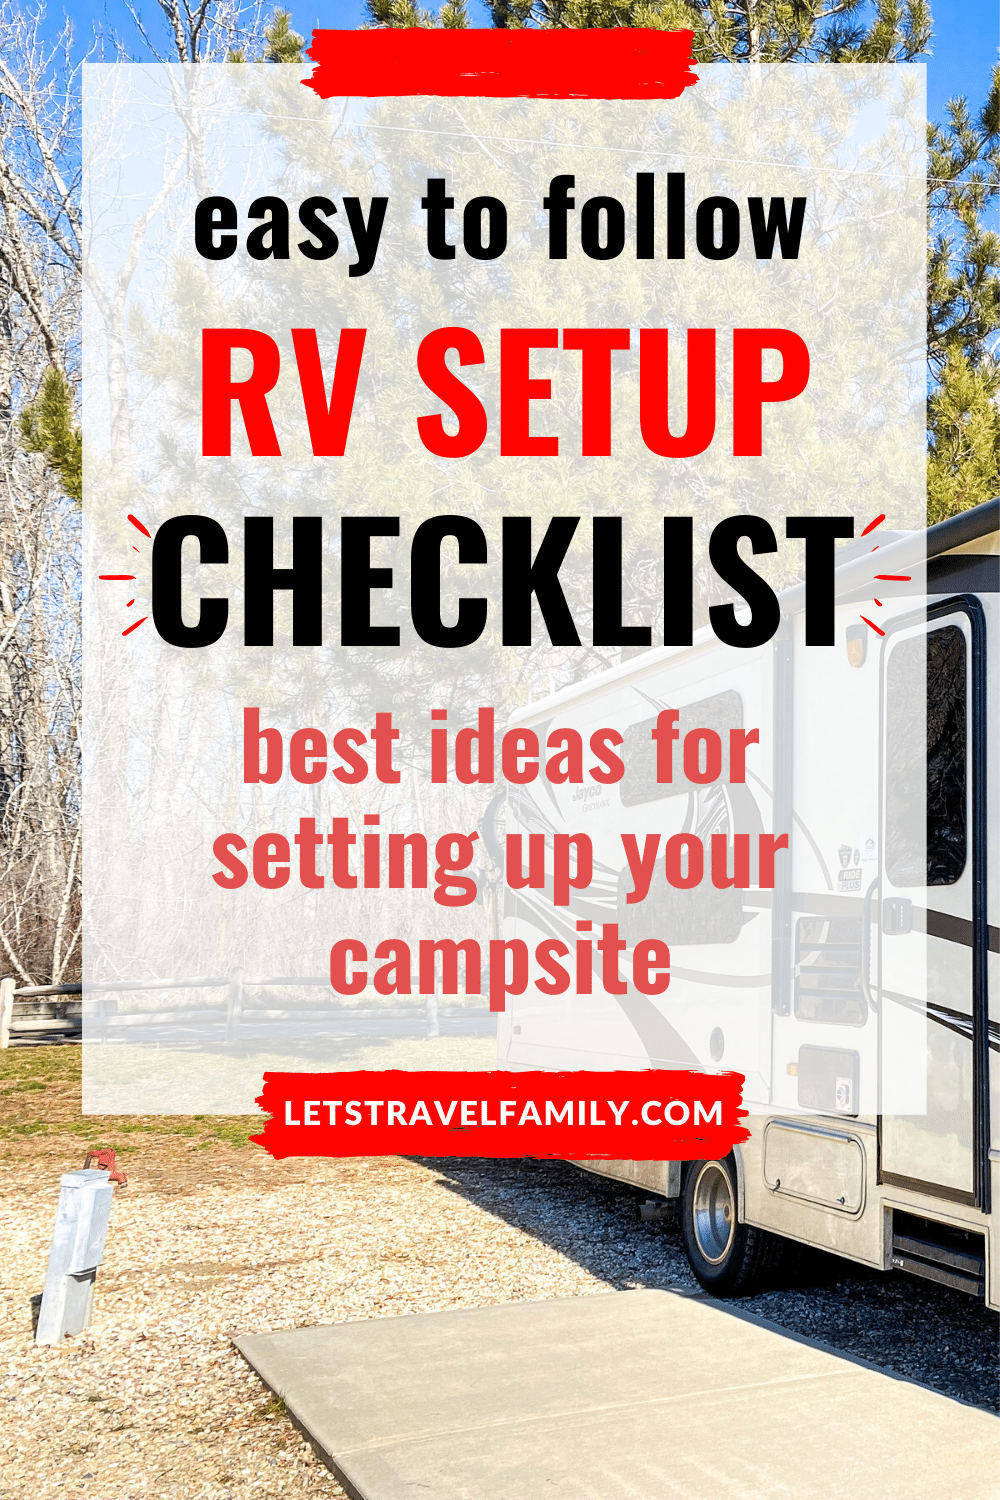 RV Setup Checklist - How to easily set up your RV